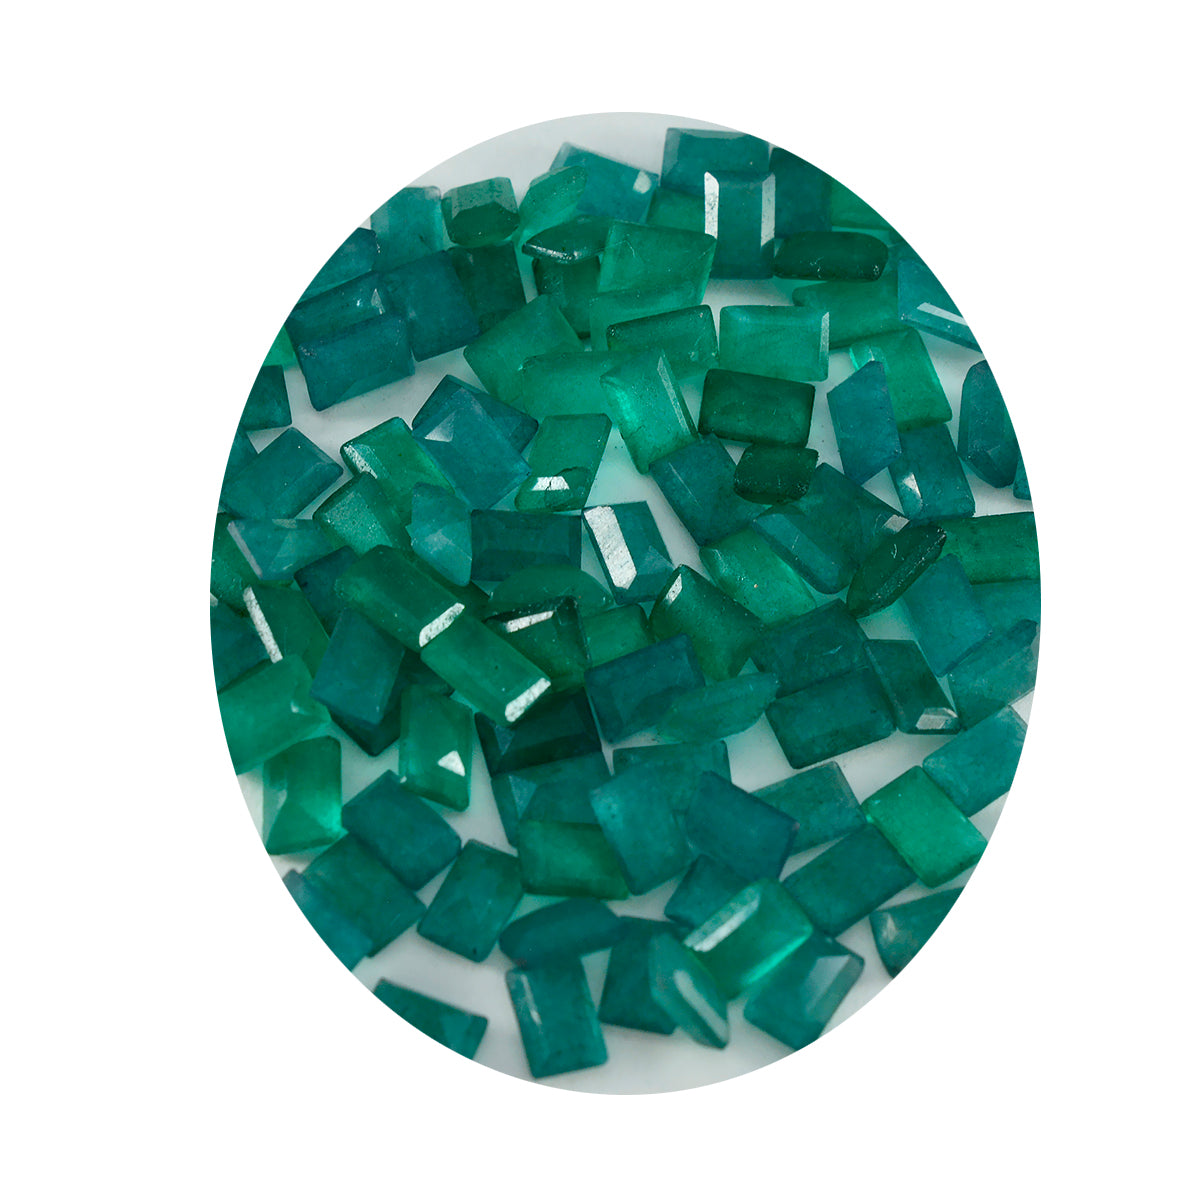 Riyogems 1PC echte groene jaspis gefacetteerd 4x6 mm achthoekige vorm verbazingwekkende kwaliteit edelsteen